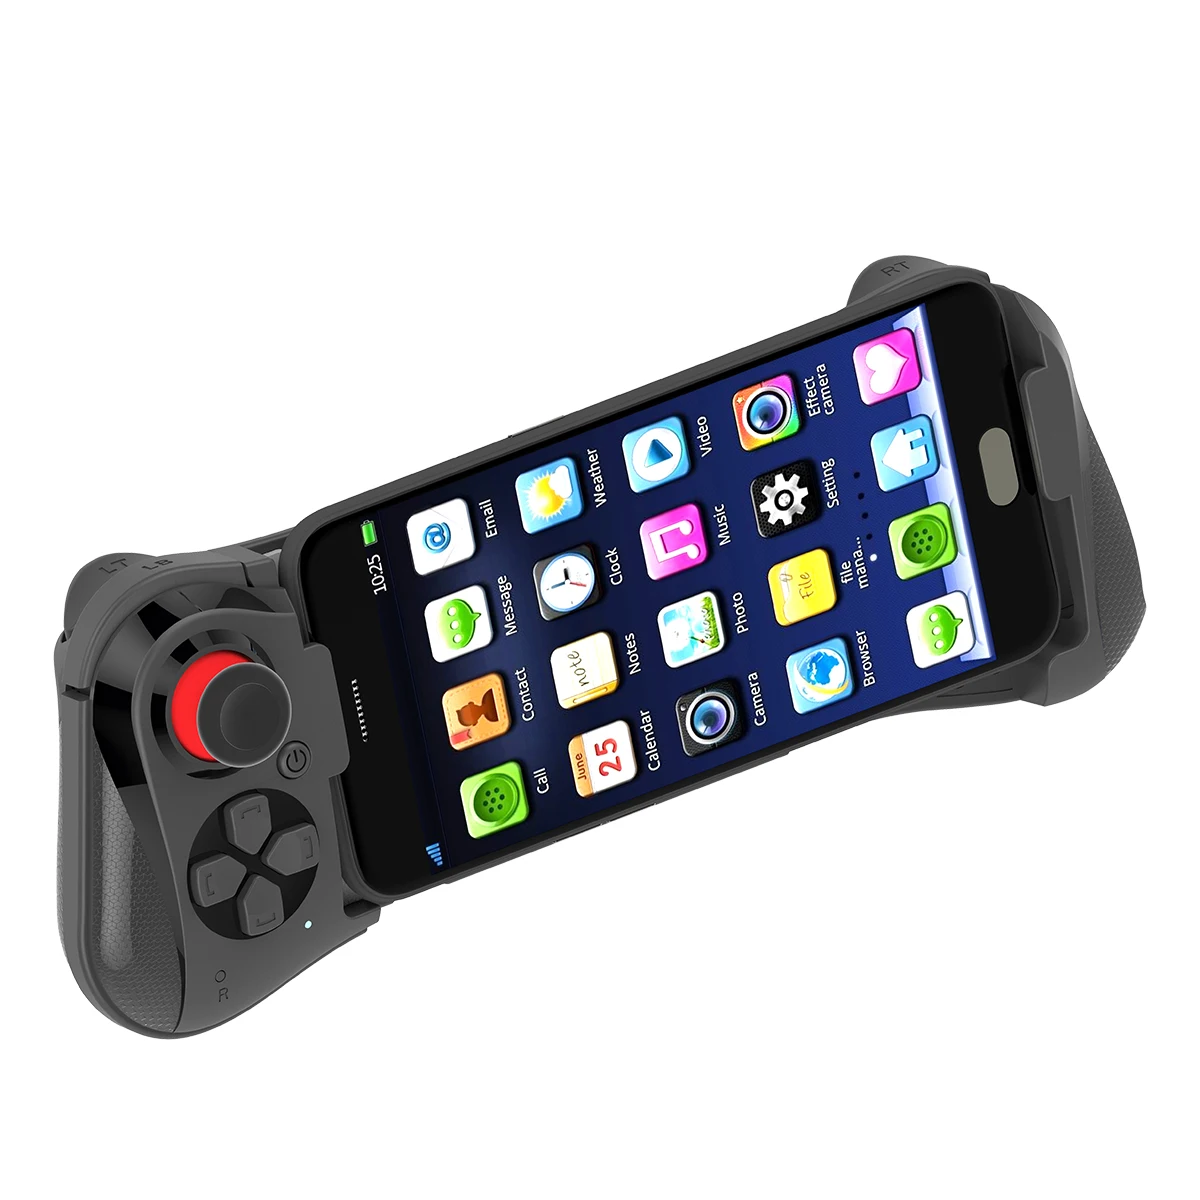 MOCUTE 058 Для xiaomi iphone XR 8 Android iOS VR PC tv box pugb мобильный телефон беспроводной bluetooth игровой контроллер, джойстик, геймпад